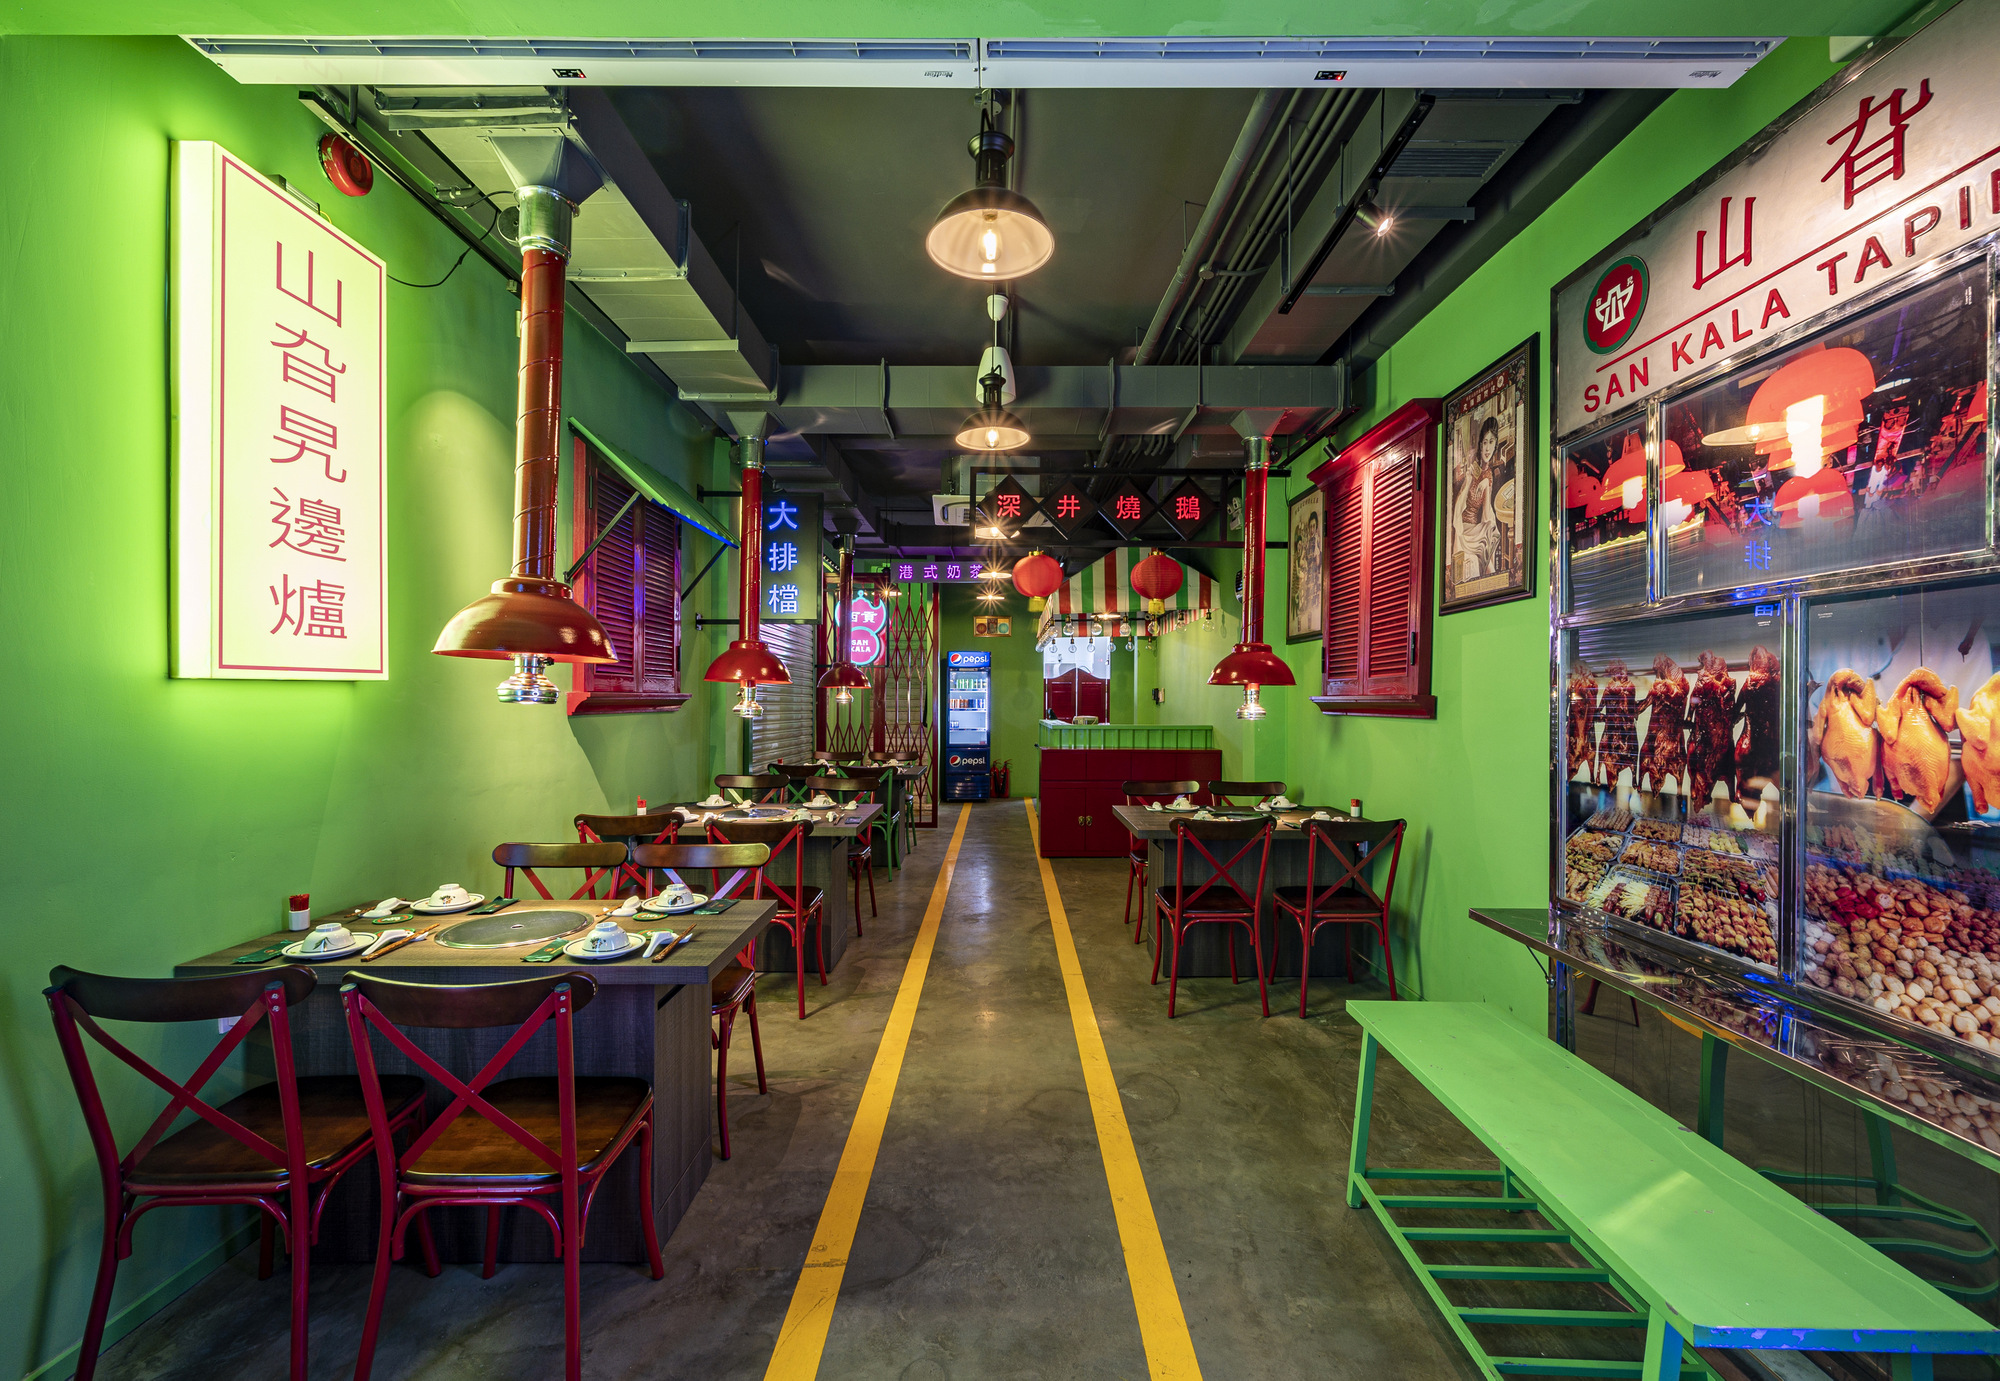 图片[3]|三卡拉香港塔品露餐厅|ART-Arrakis | 建筑室内设计的创新与灵感